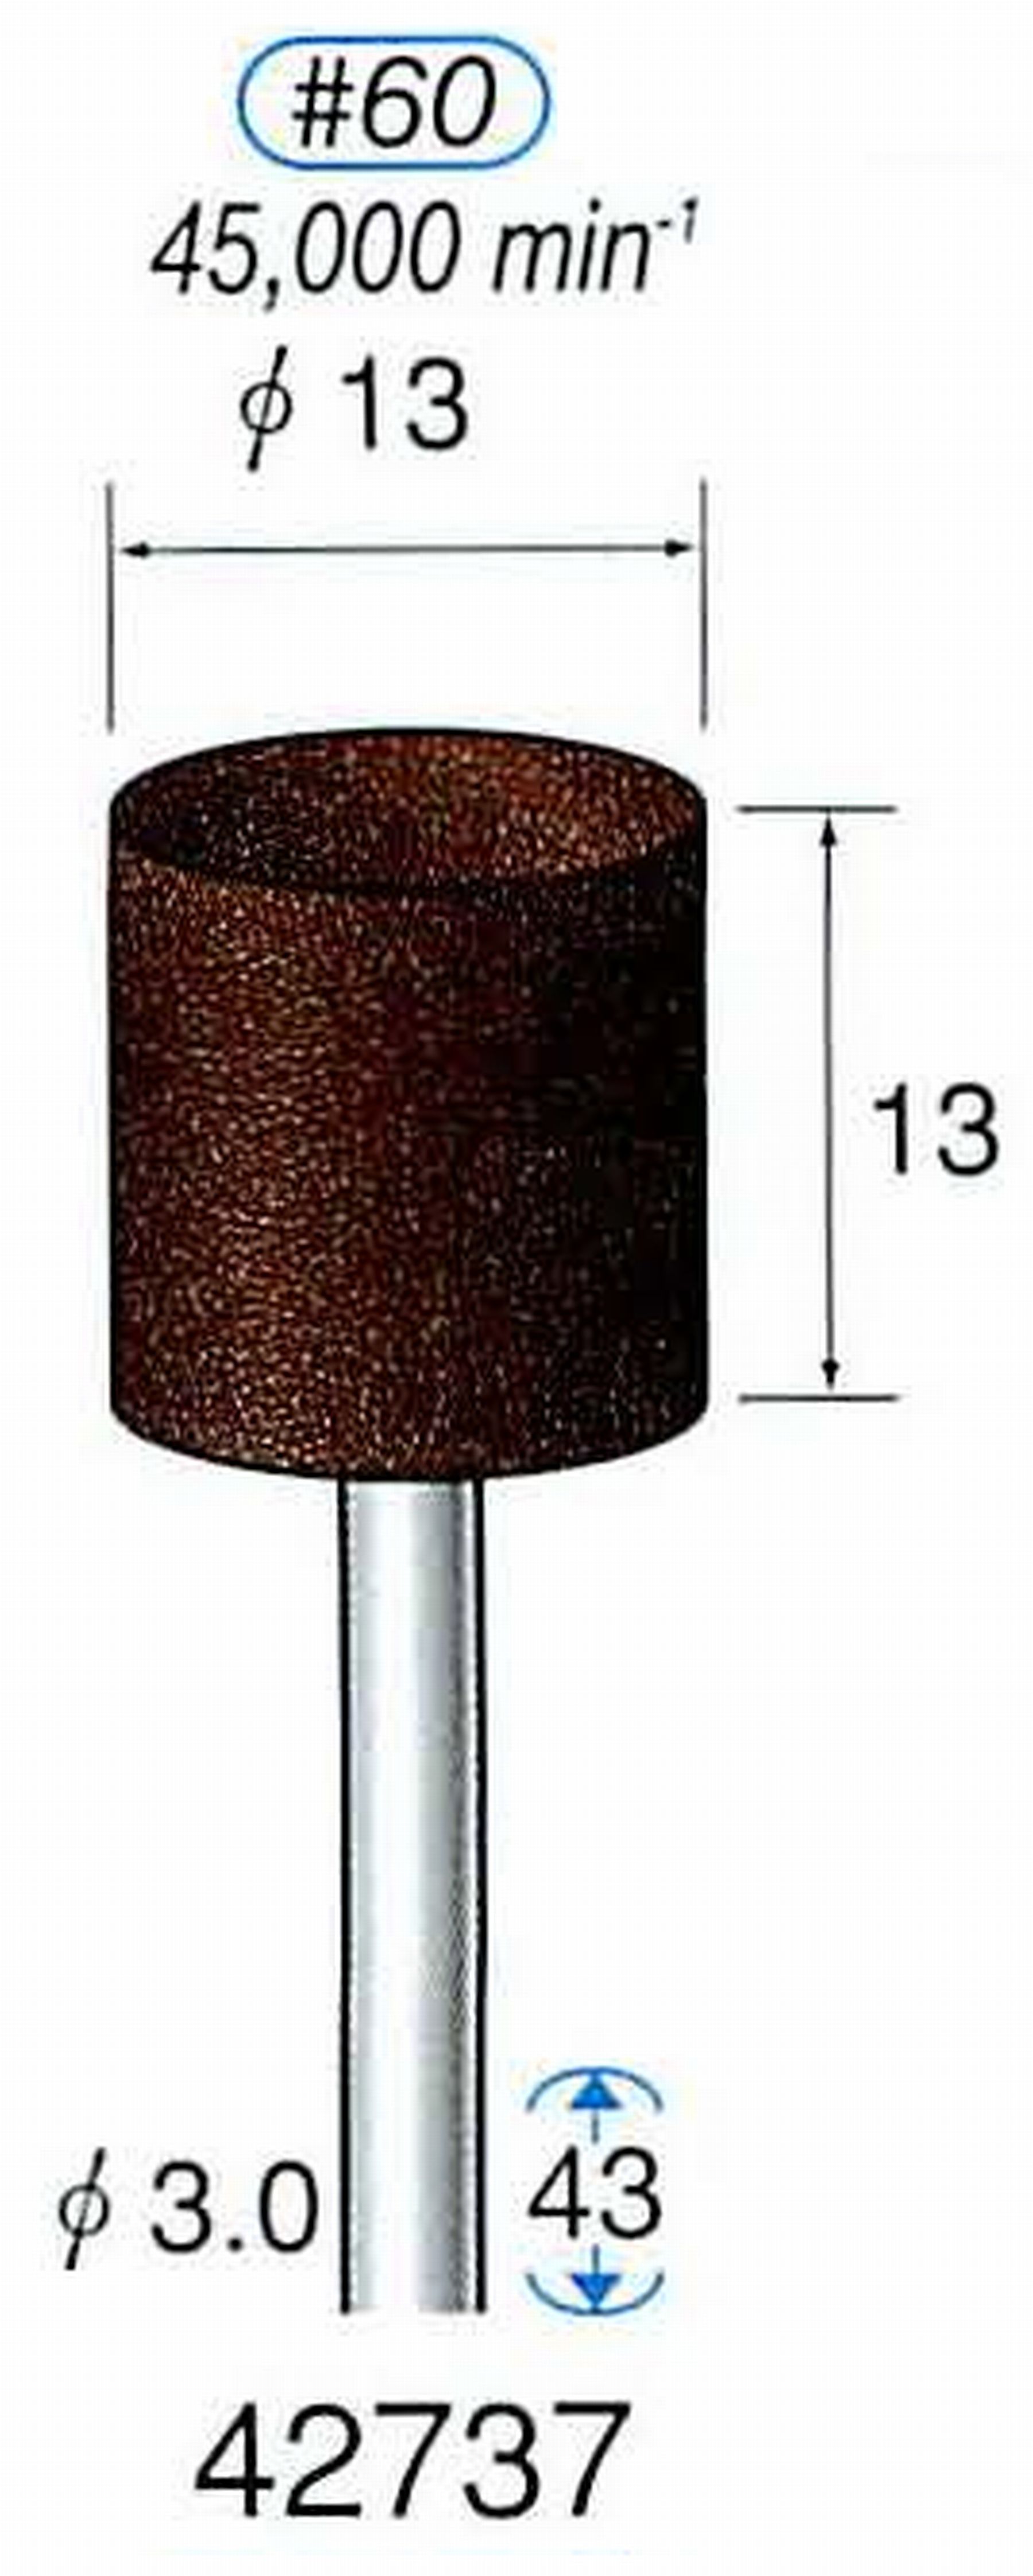 ナカニシ/NAKANISHI 軸付砥石(A・WA砥粒) ブラウン砥石 軸径(シャンク) φ3.0mm 42737